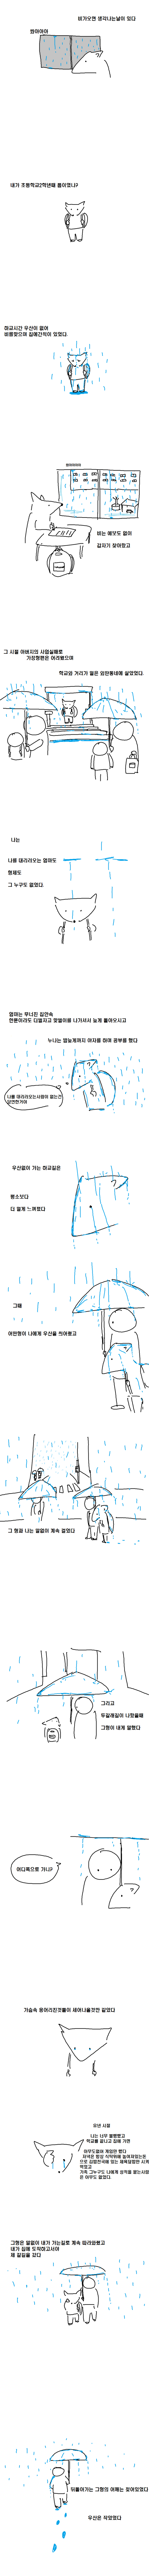 비가 오면 그날이 생각나는 만화.jpg